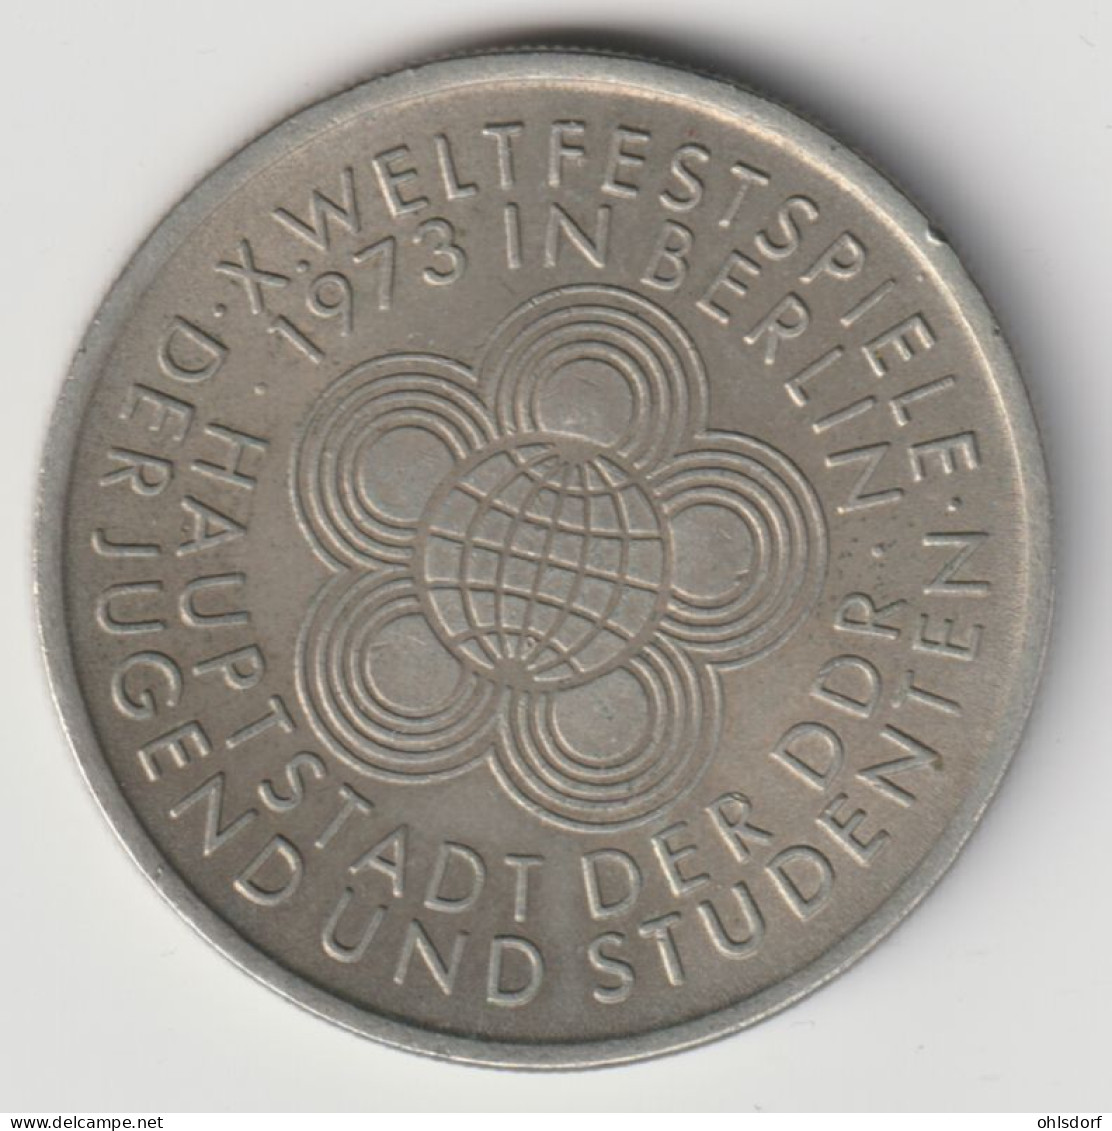 DDR 1973: 10 Mark, Weltfestspiele, KM 44 - 10 Mark